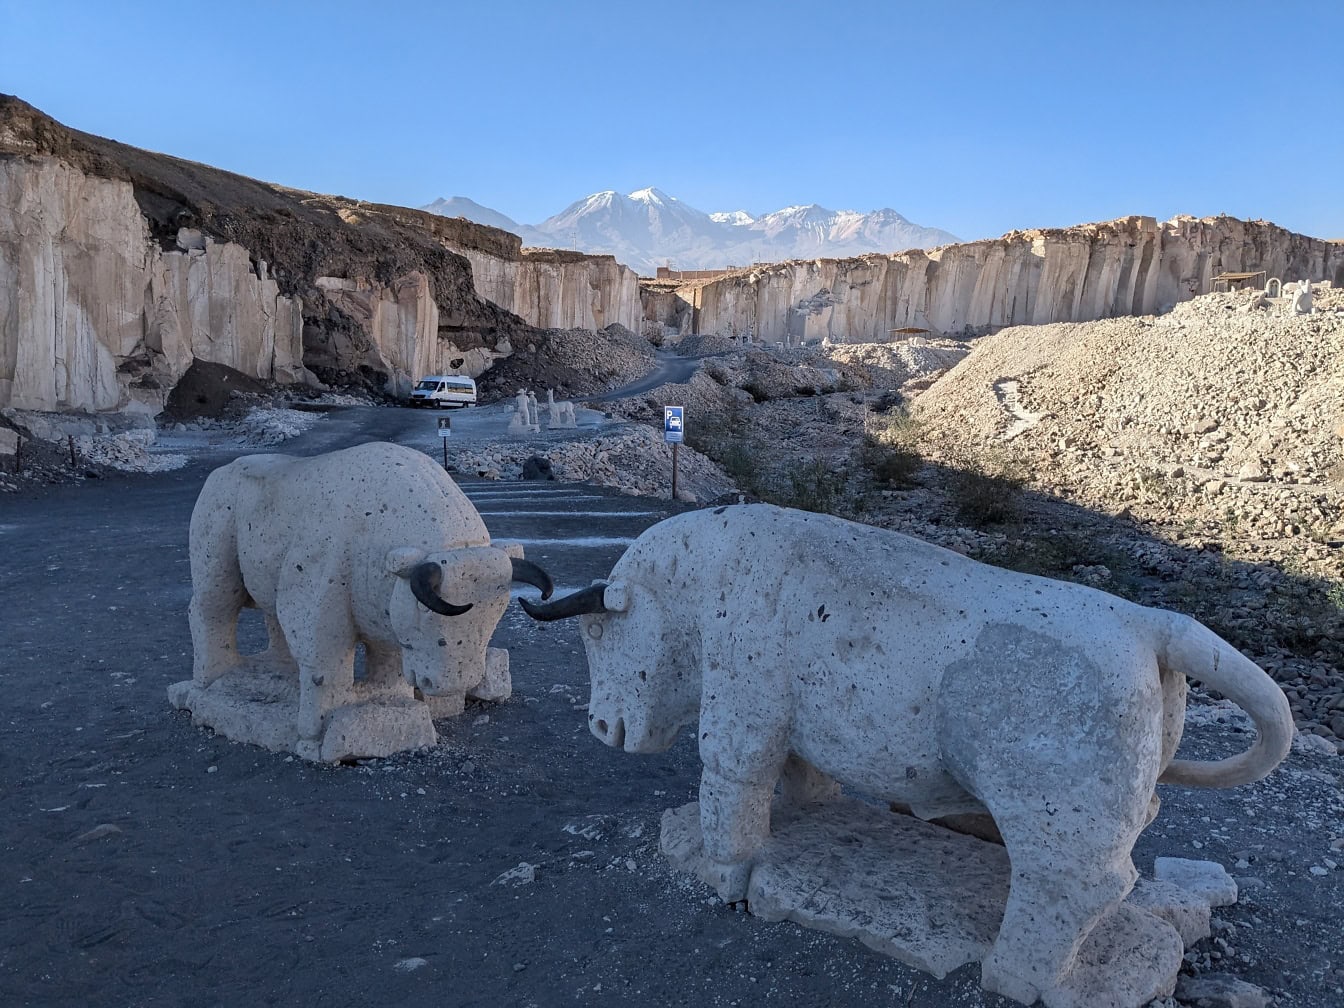 รูปปั้นวัวหินใน Arequipa ในเปรูซึ่งเป็นสถานที่ท่องเที่ยวที่มีชื่อเสียง